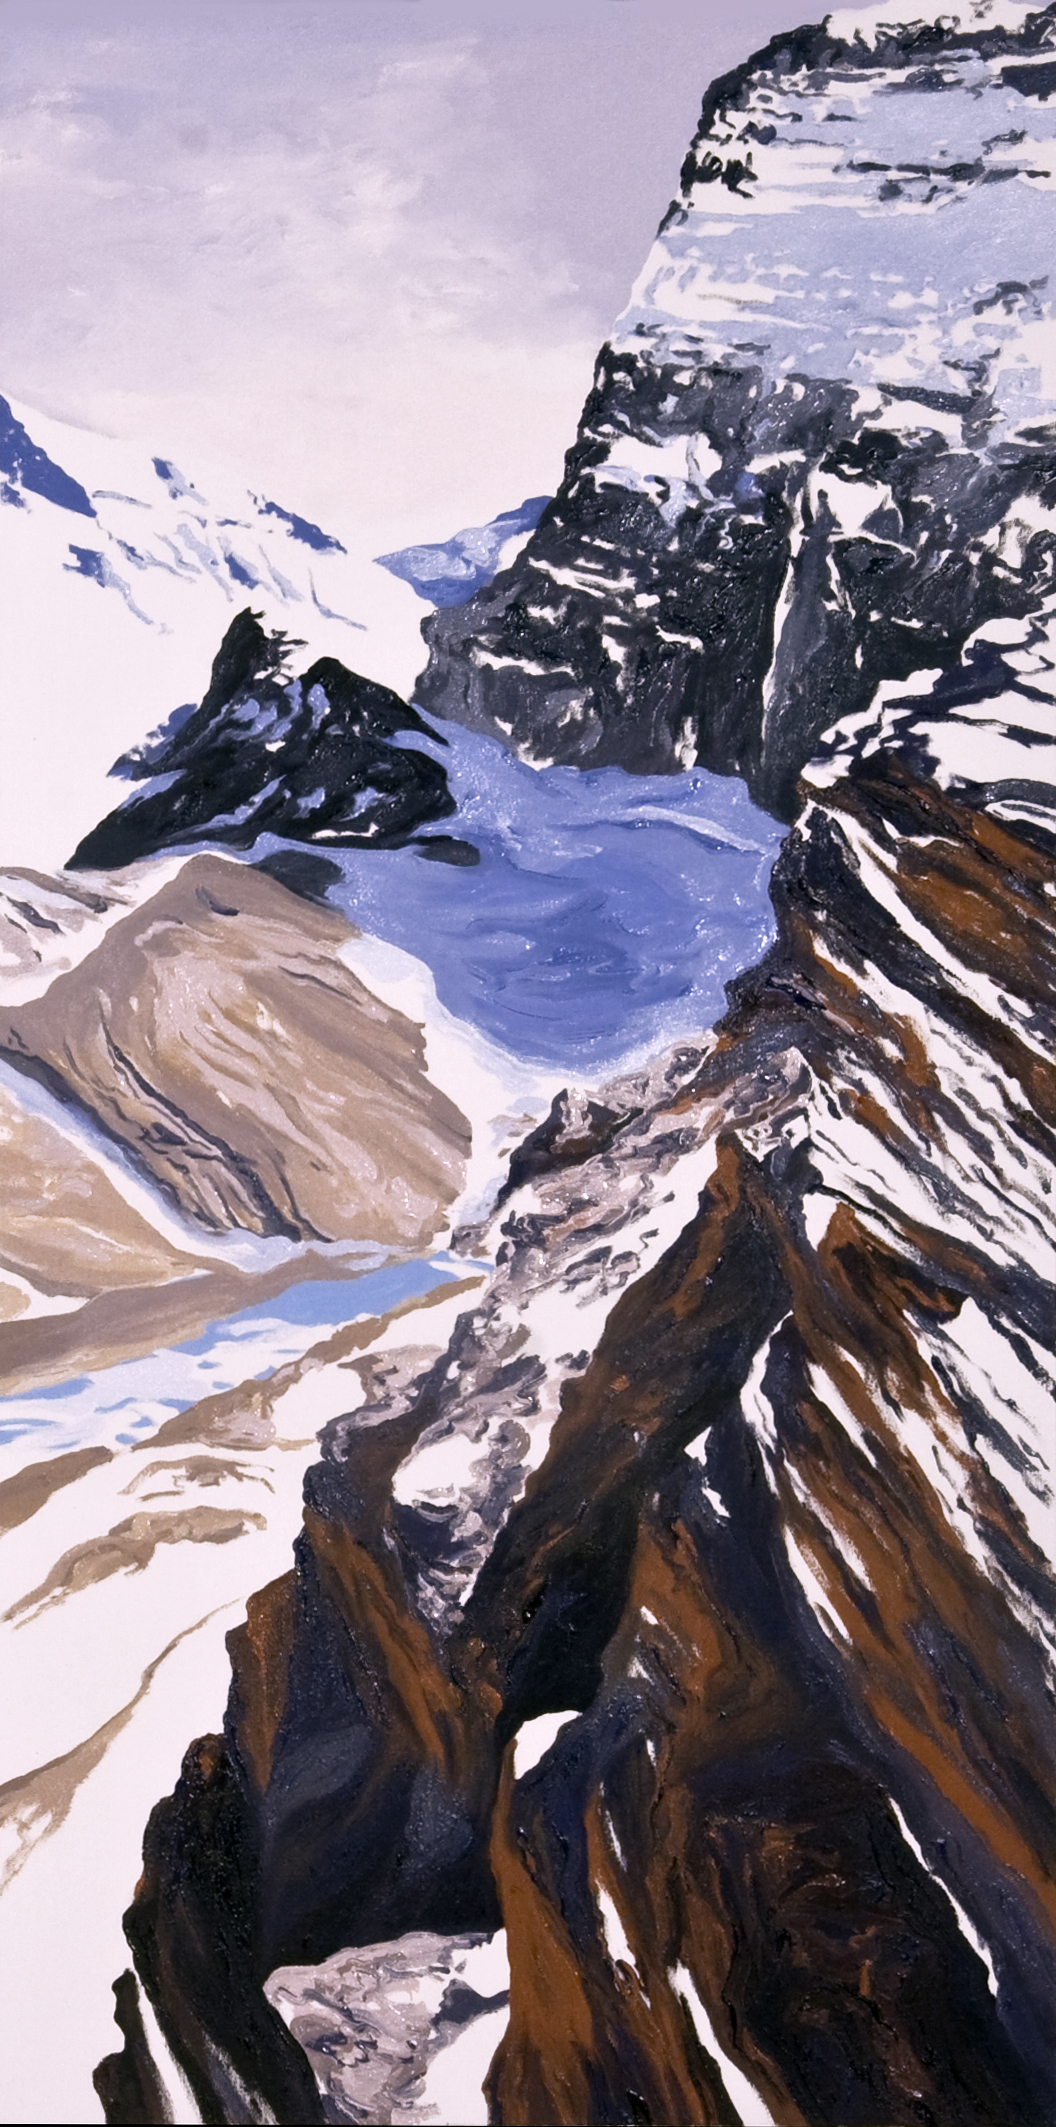 Grinnell Glacier Overlook #4, 2008 after Steven Mather